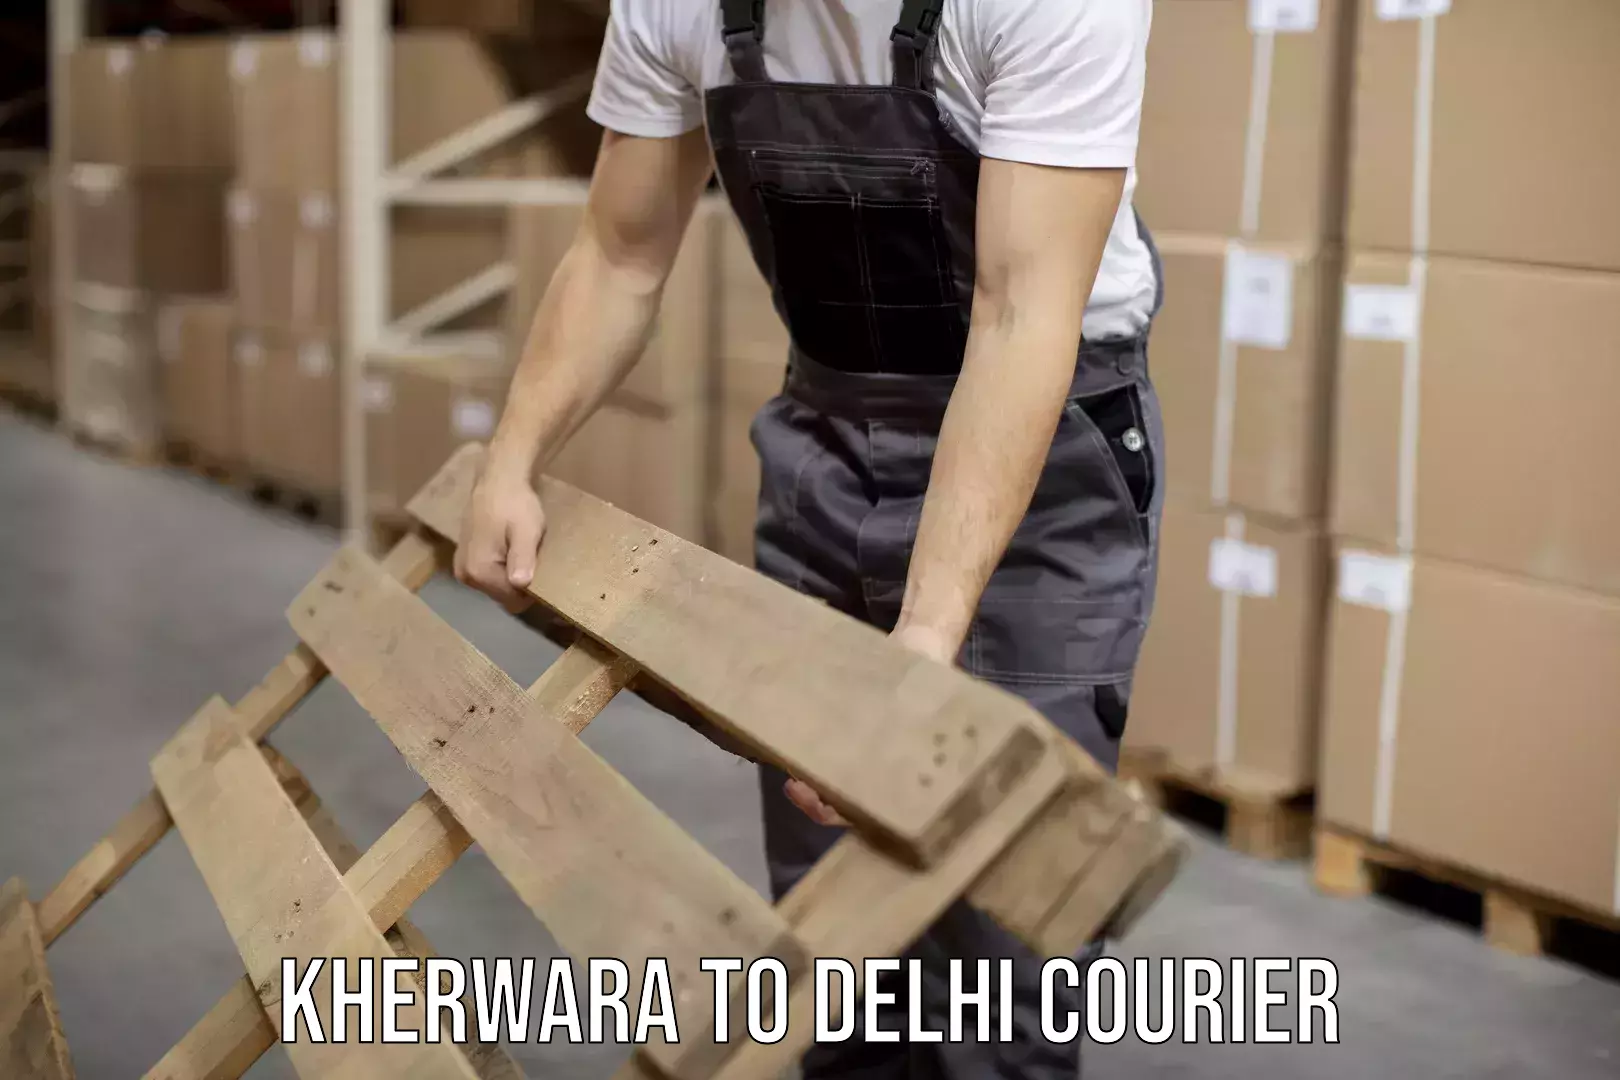 Courier service comparison Kherwara to IIT Delhi